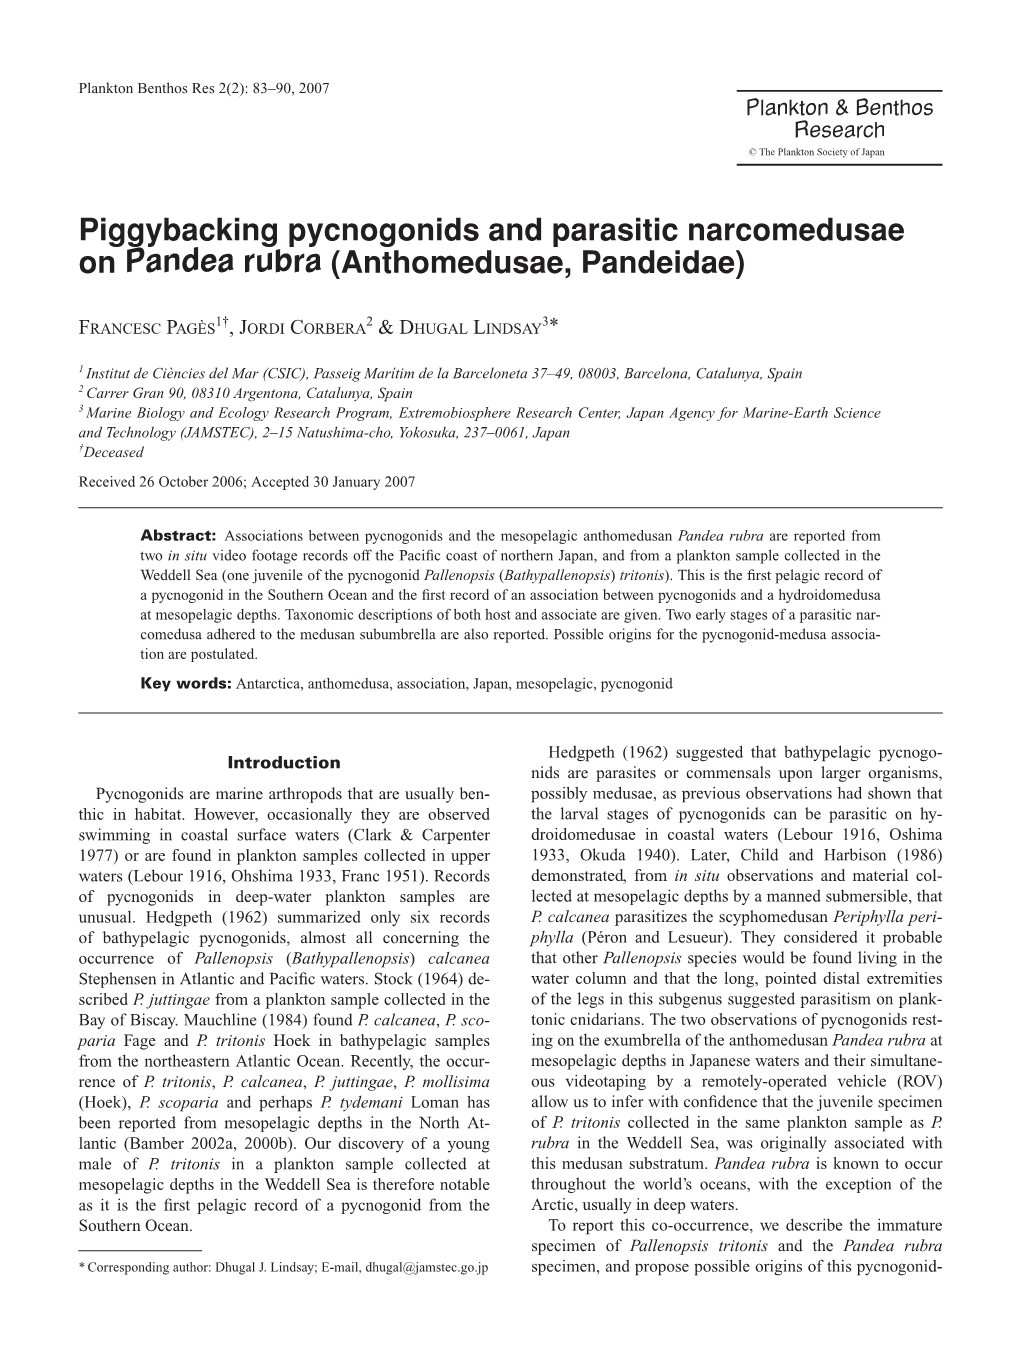 Piggybacking Pycnogonids and Parasitic Narcomedusae on Pandea Rubra (Anthomedusae, Pandeidae)